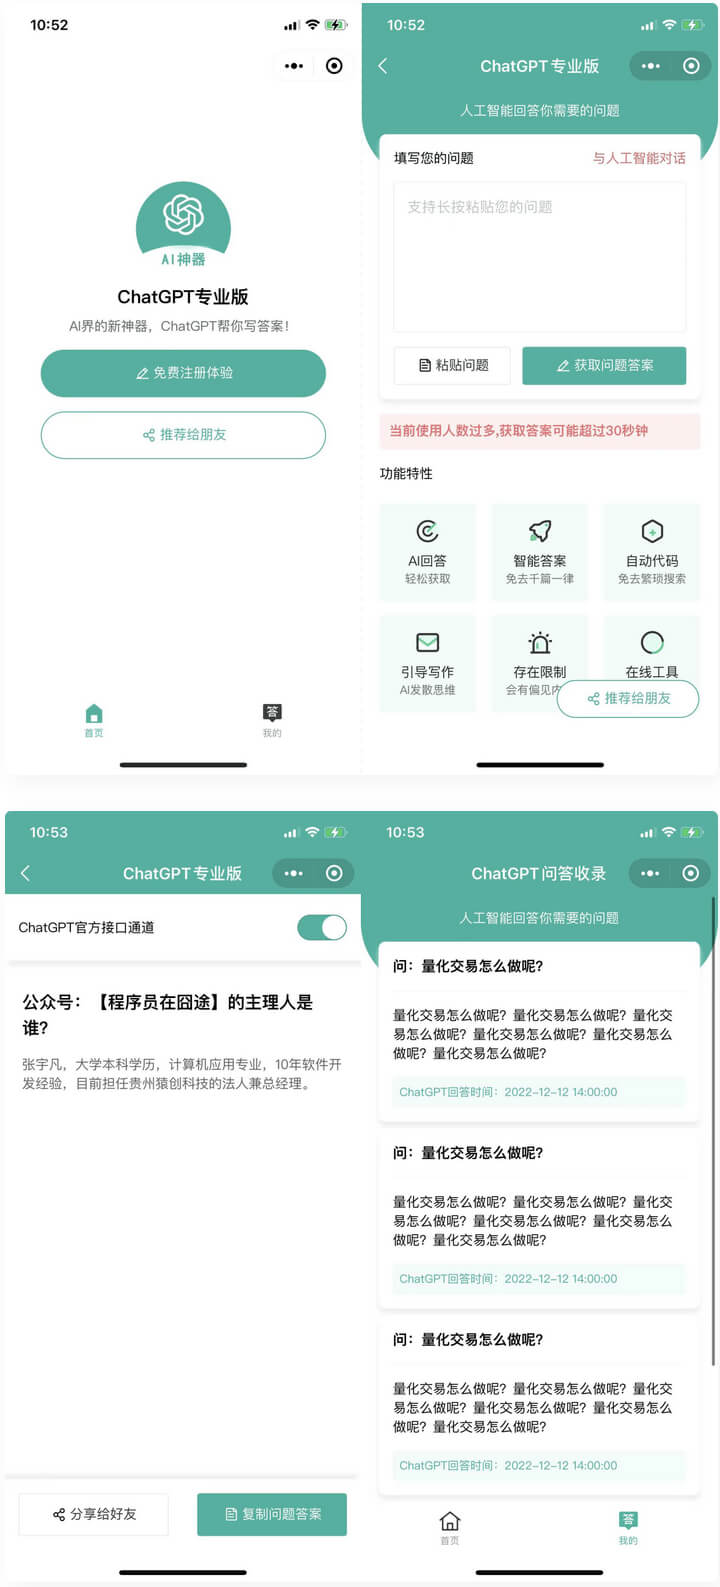 ChatGPT 是 OpenAI 开发的一款专门从事对话的人工智能聊天机器人原型 1